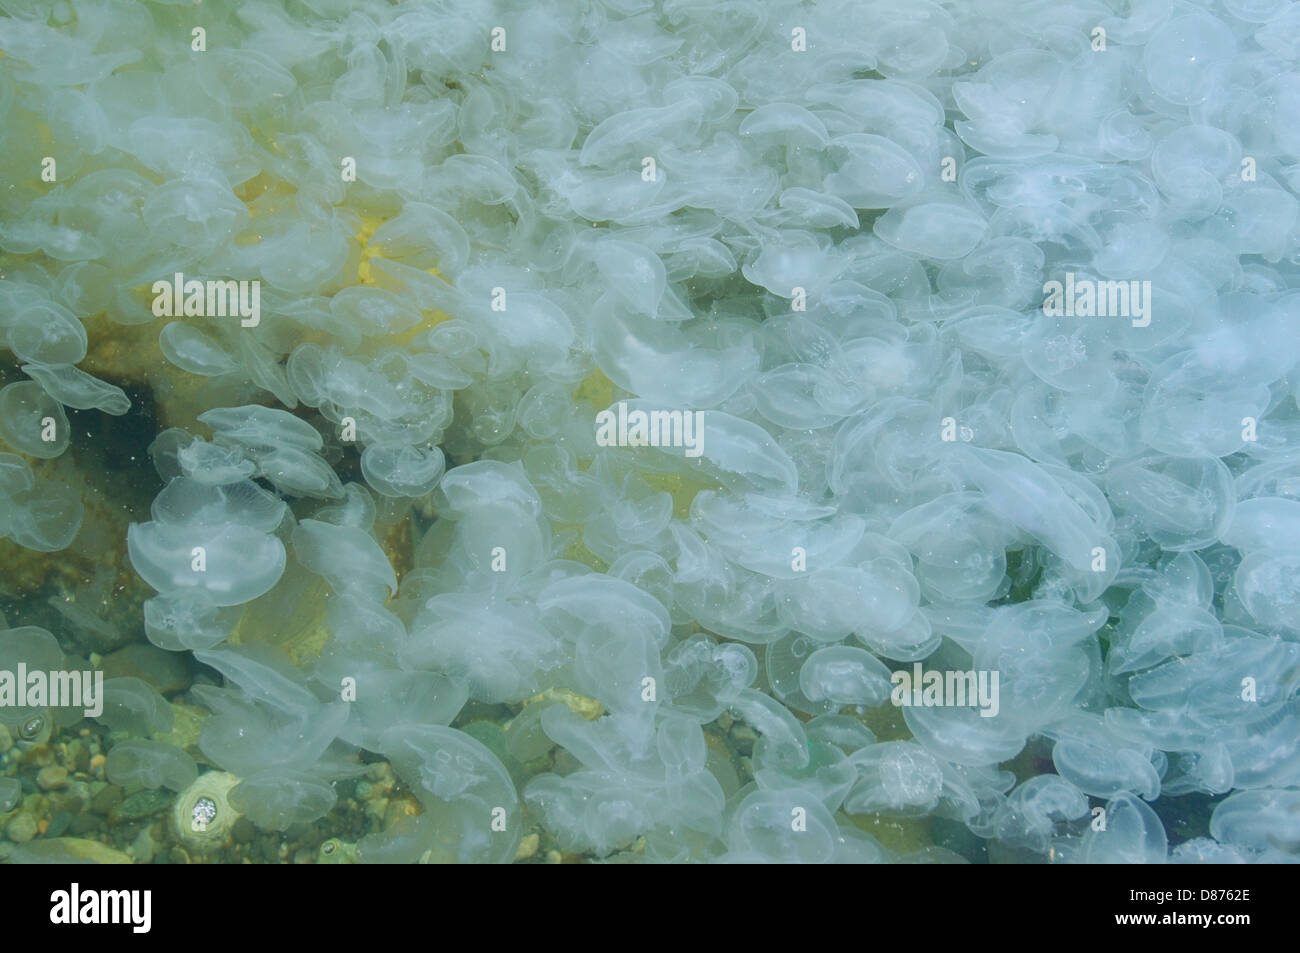 Large accumulation of jellyfish Aurelia (Aurelia aurita) in shallow water, Black sea, Yalta, Crimea, Ukraine, Eastern Europe Stock Photo